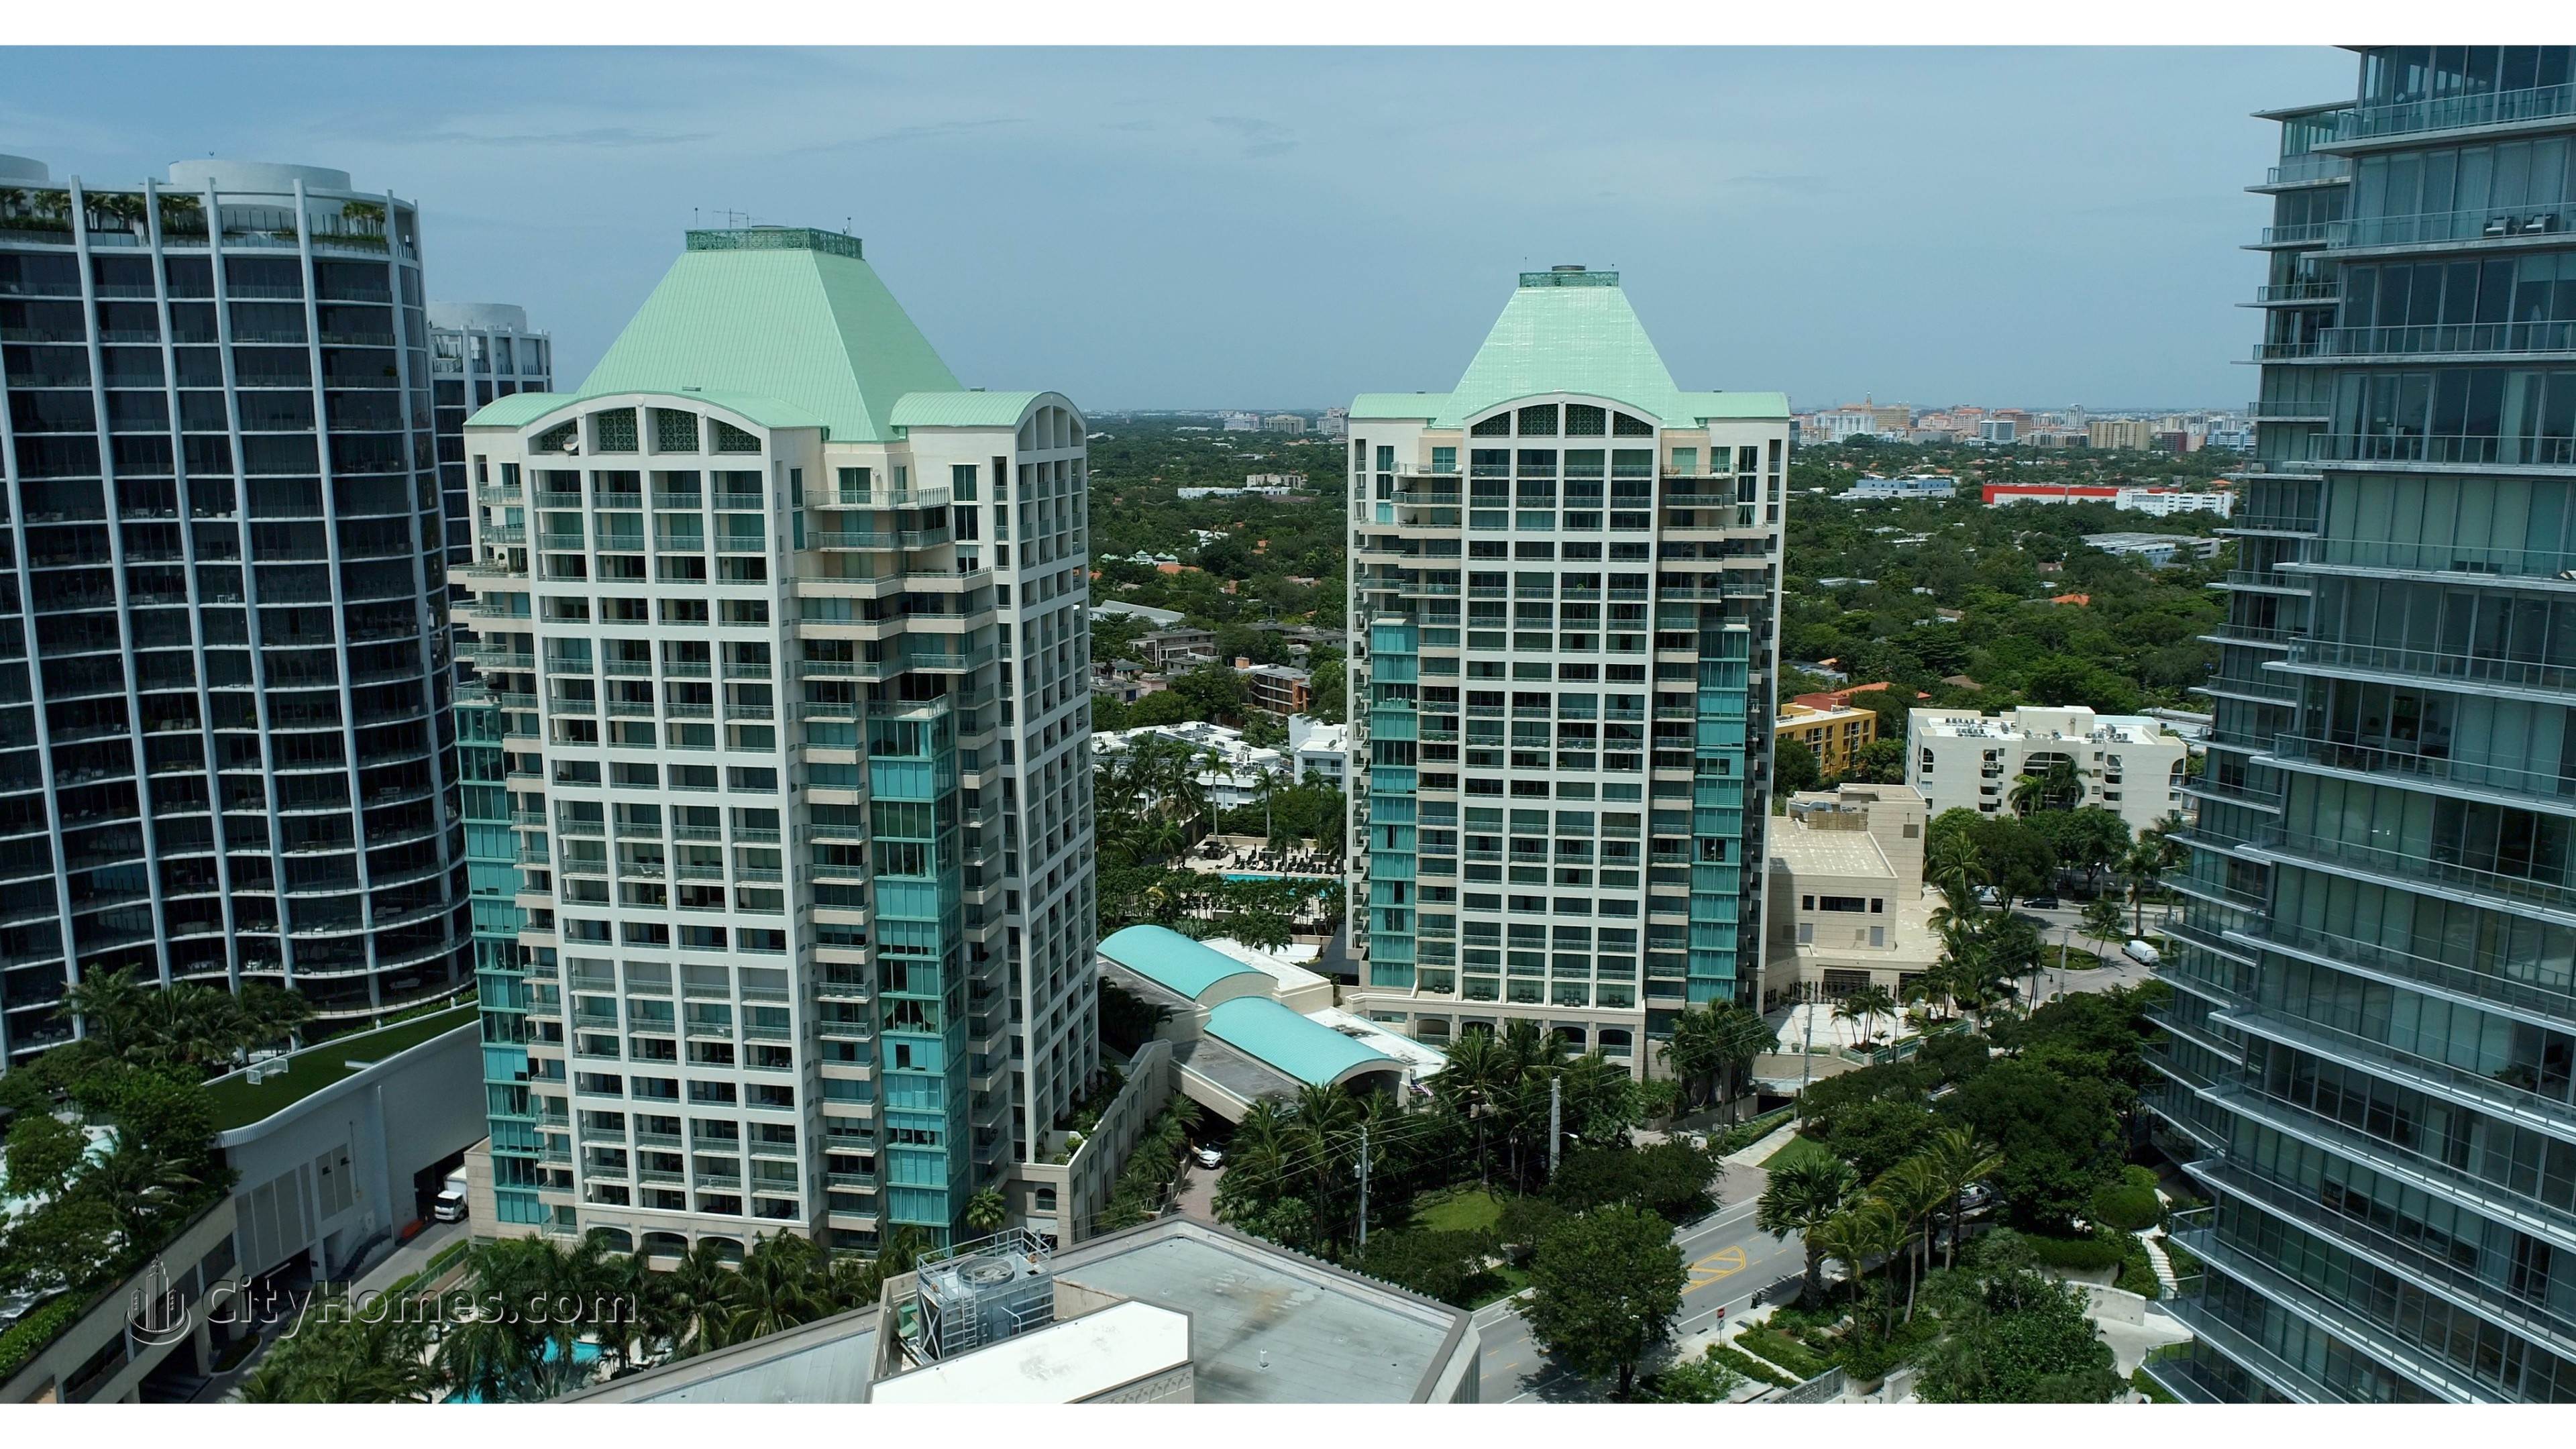 Ritz-Carlton Coconut Grove gebouw op 3300 And 3350 SW 27th Avenue, Miami, FL 33133